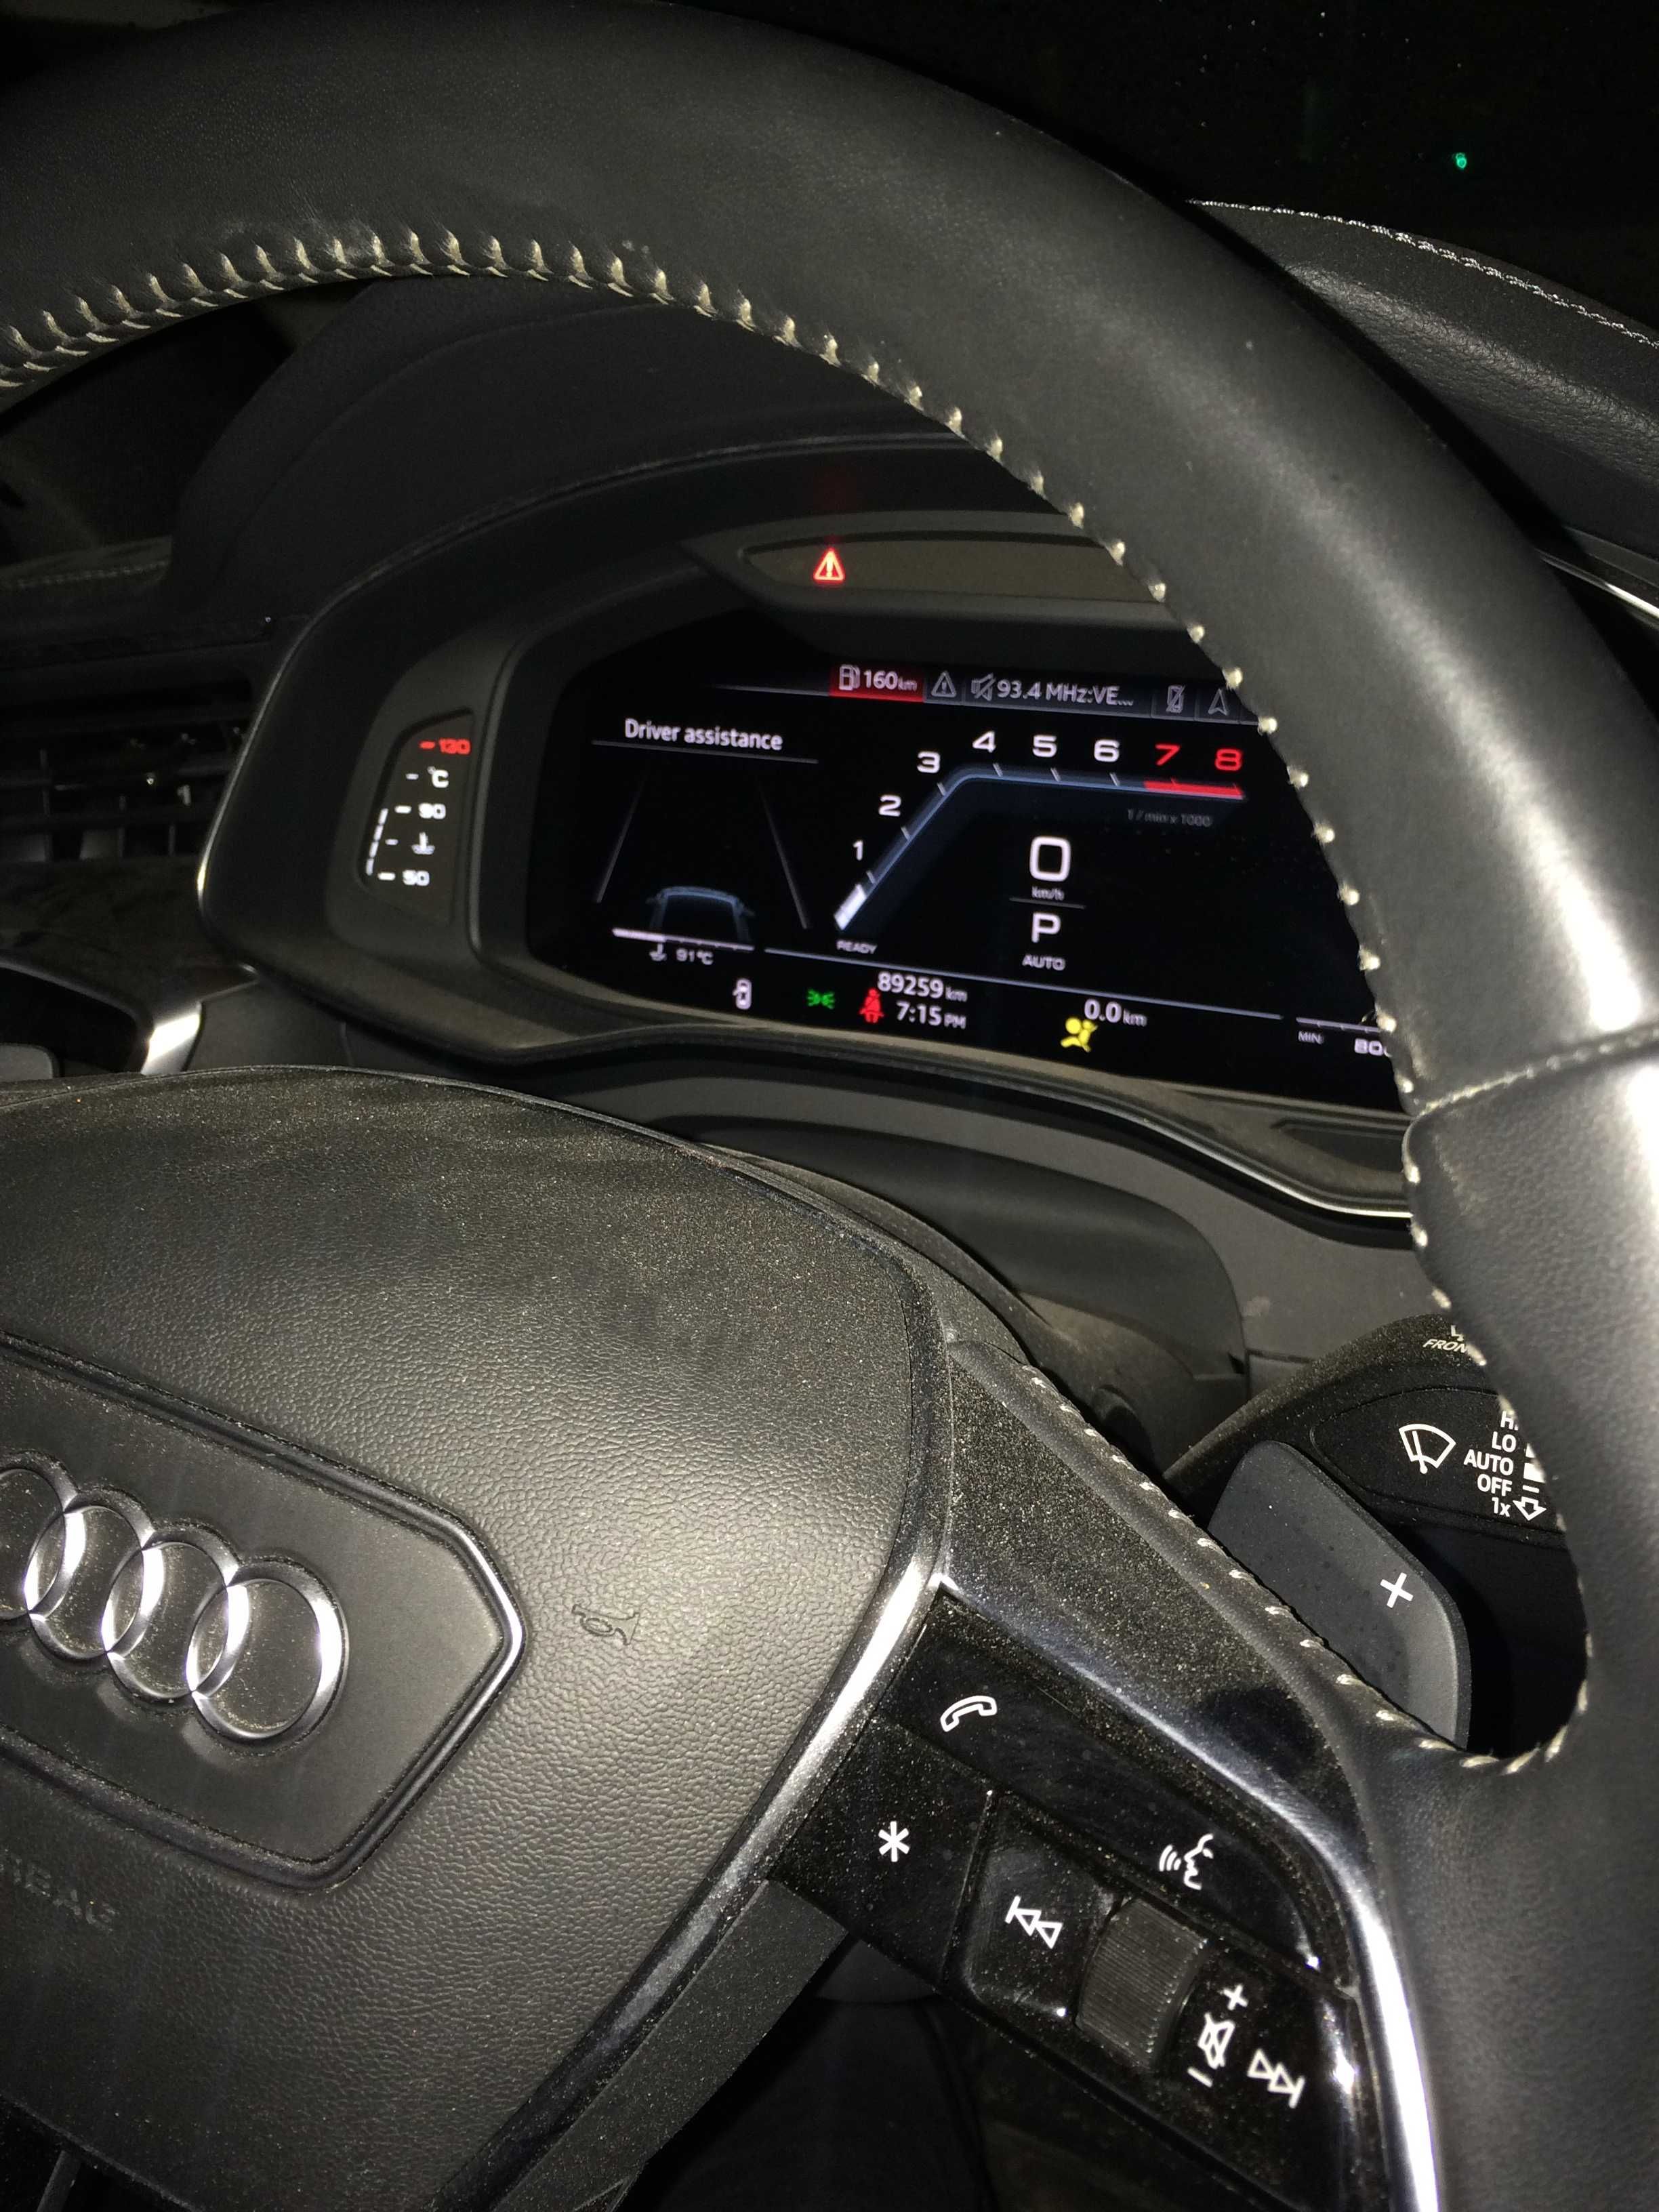 Audi S RS Gen2 Sport Cockpit Виртуално Спортно Оформление Audi Пловдив